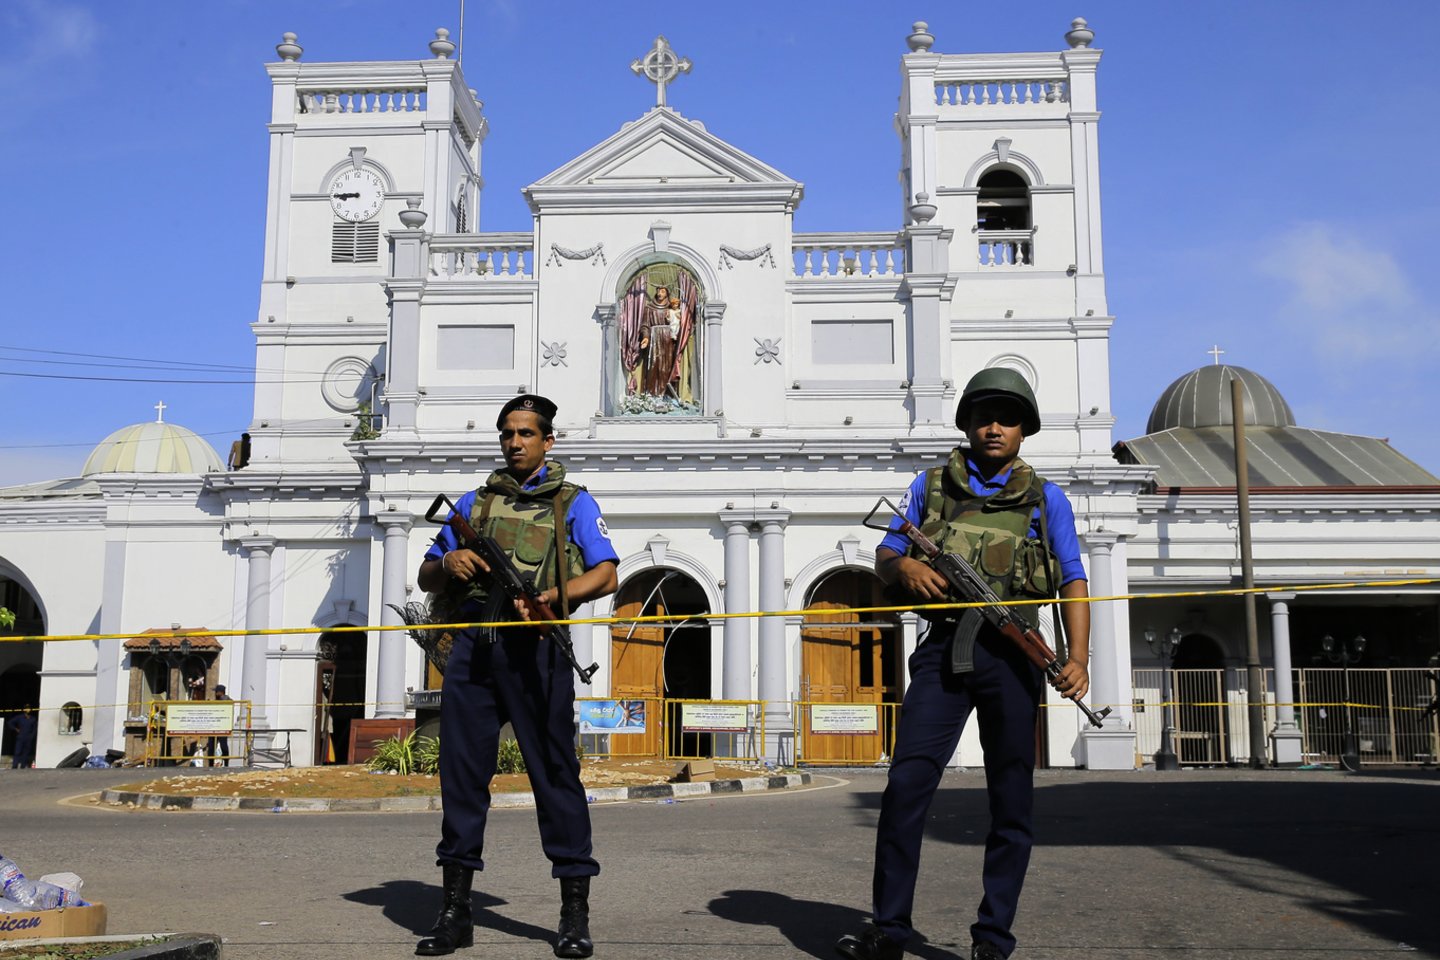 Šri Lankoje dėl atakų įvesta nepaprastoji padėtis: šalyje masinės kratos ir areštai<br>AP nuotr.